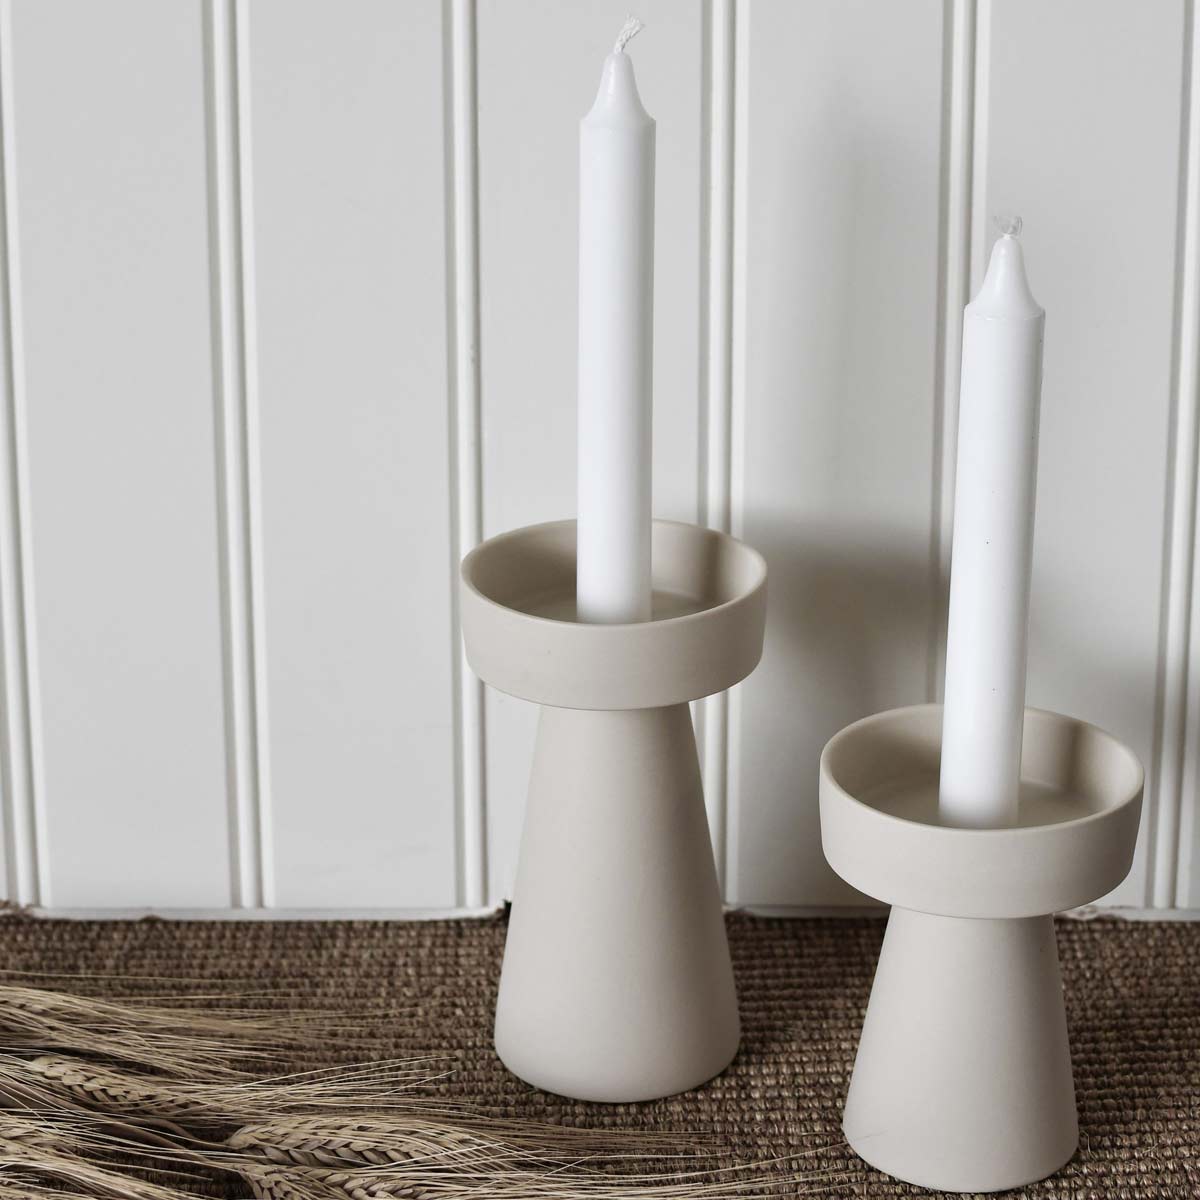 ØxH Keramik Talbo Kerzenleuchter Farbe: Weiß Storefactory : 9 x 16 cm Maße Kerzenständer 